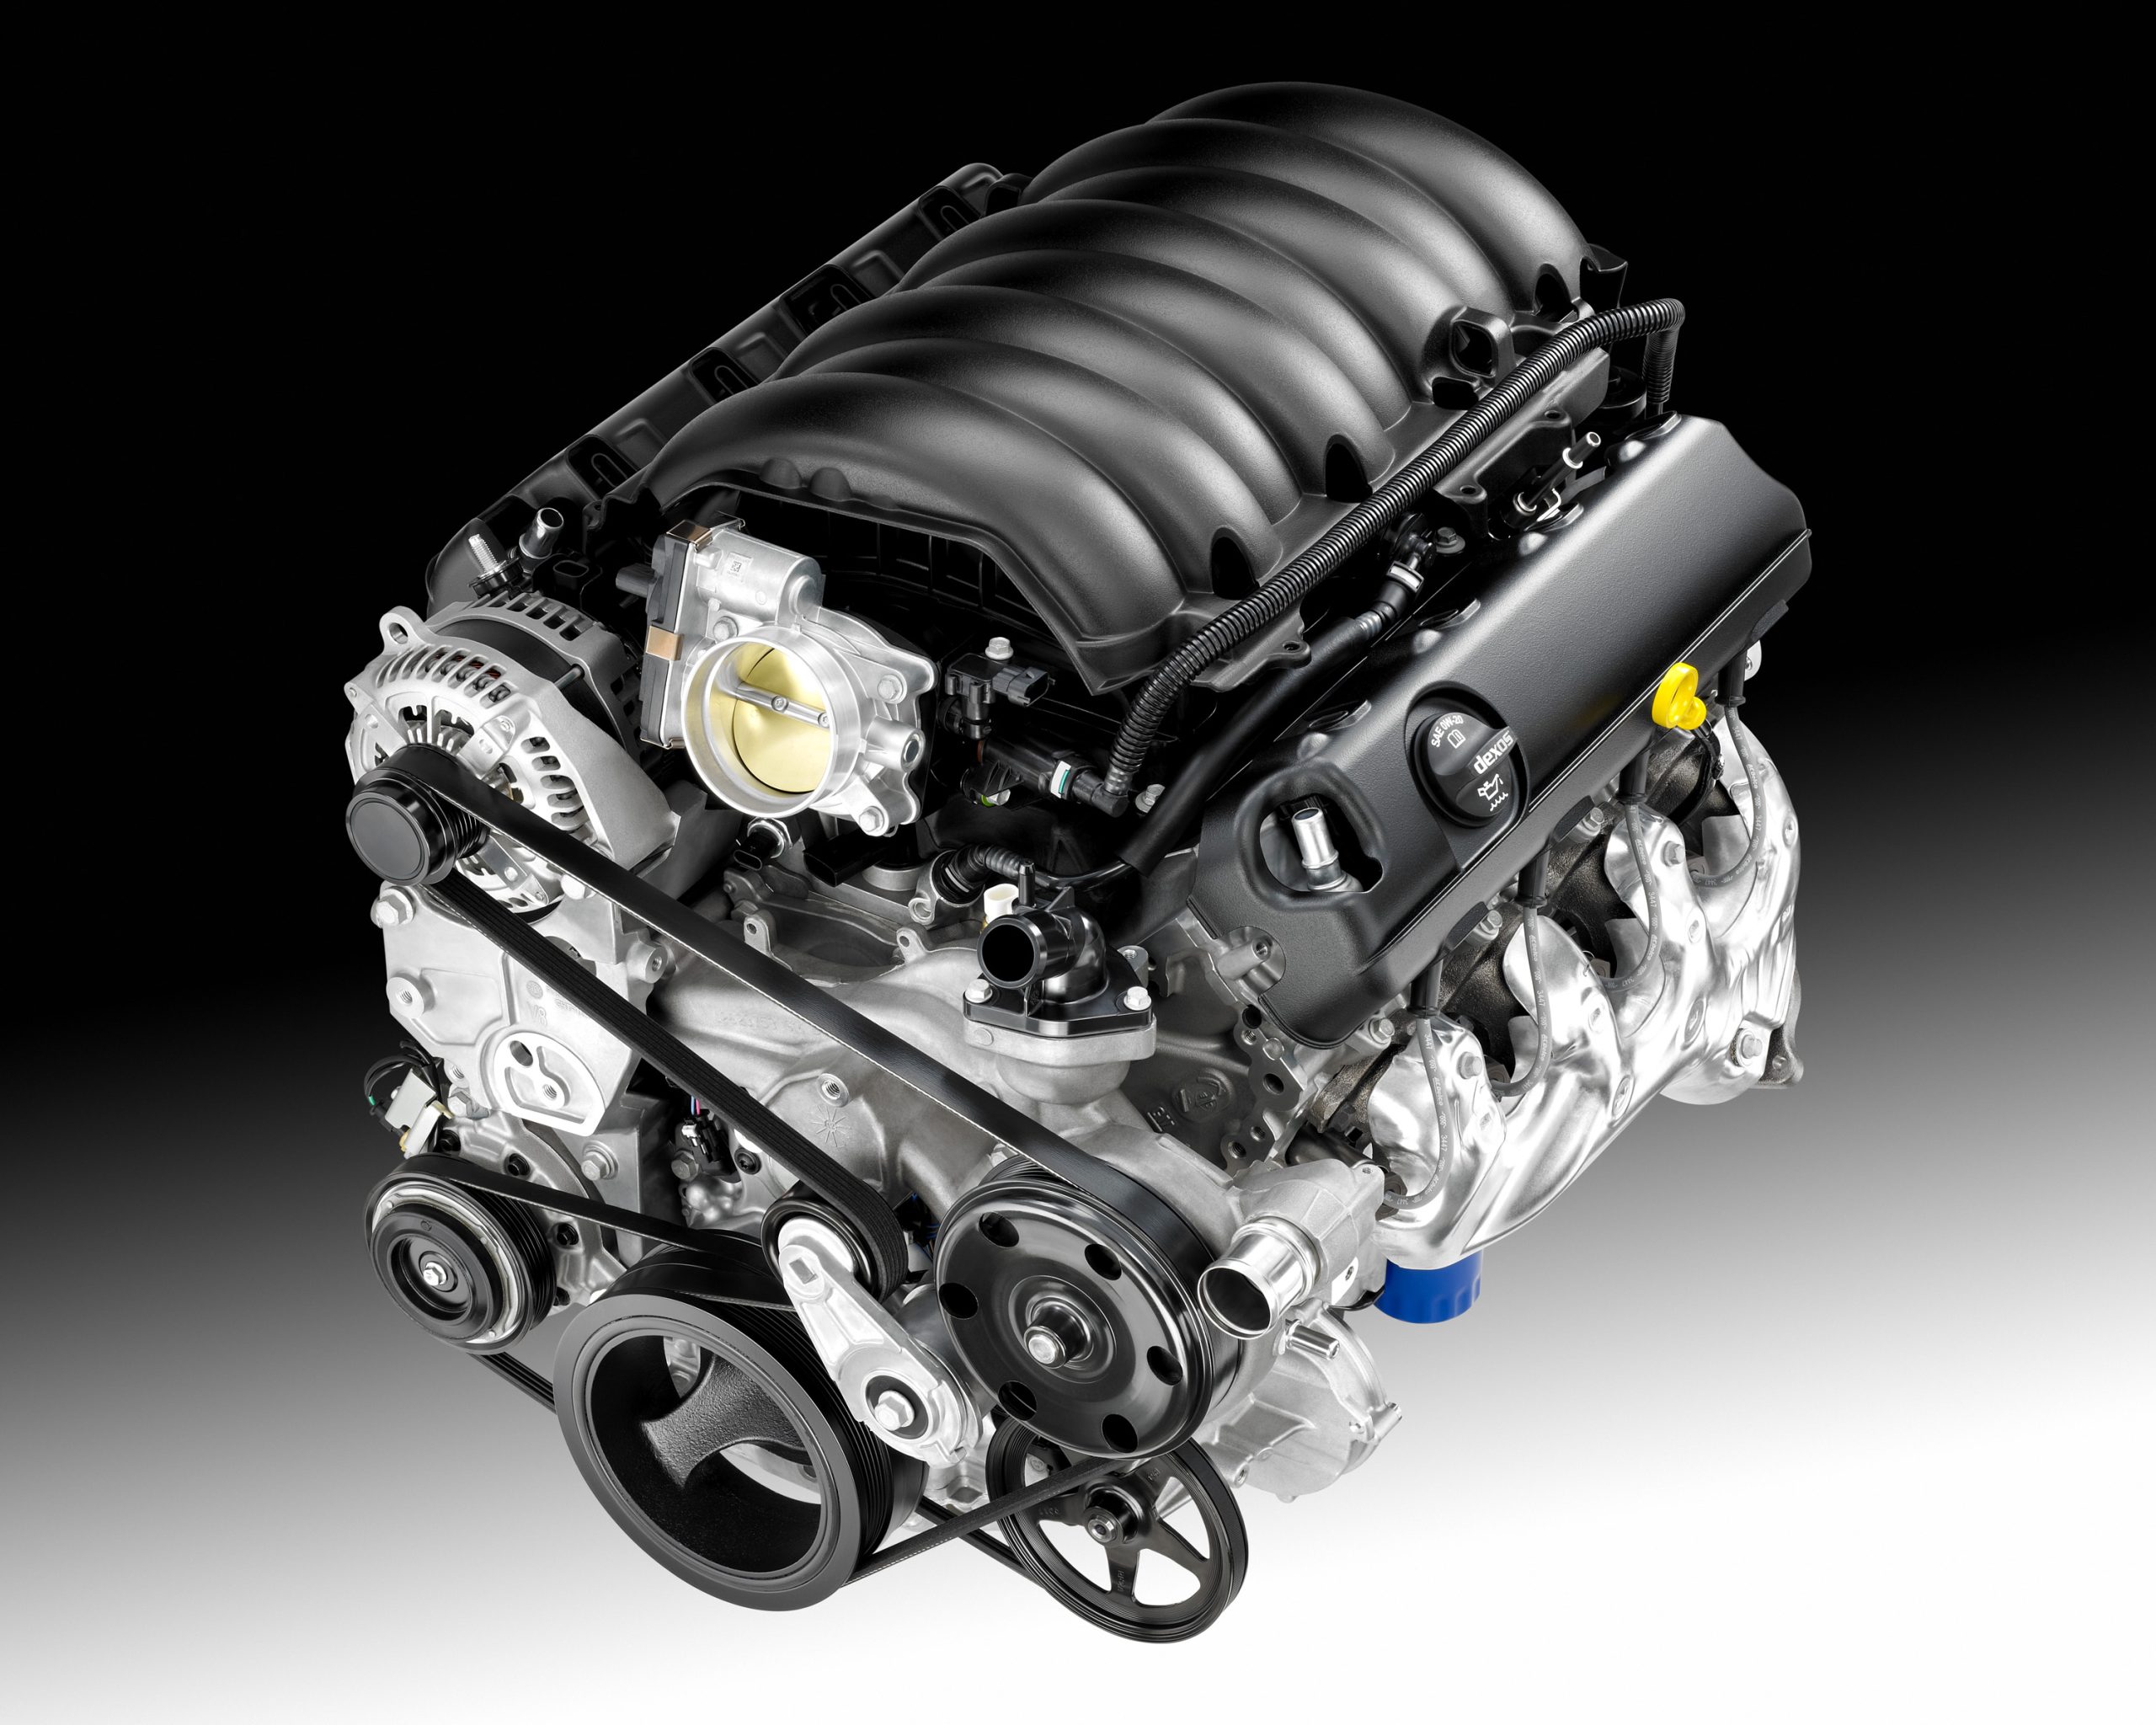 Мотор шеви. V8 двигатель Chevrolet. 6.2L v8 ecotec3. Двигатель Шевроле Тахо 6.2. GM ECOTEC 3 l86.